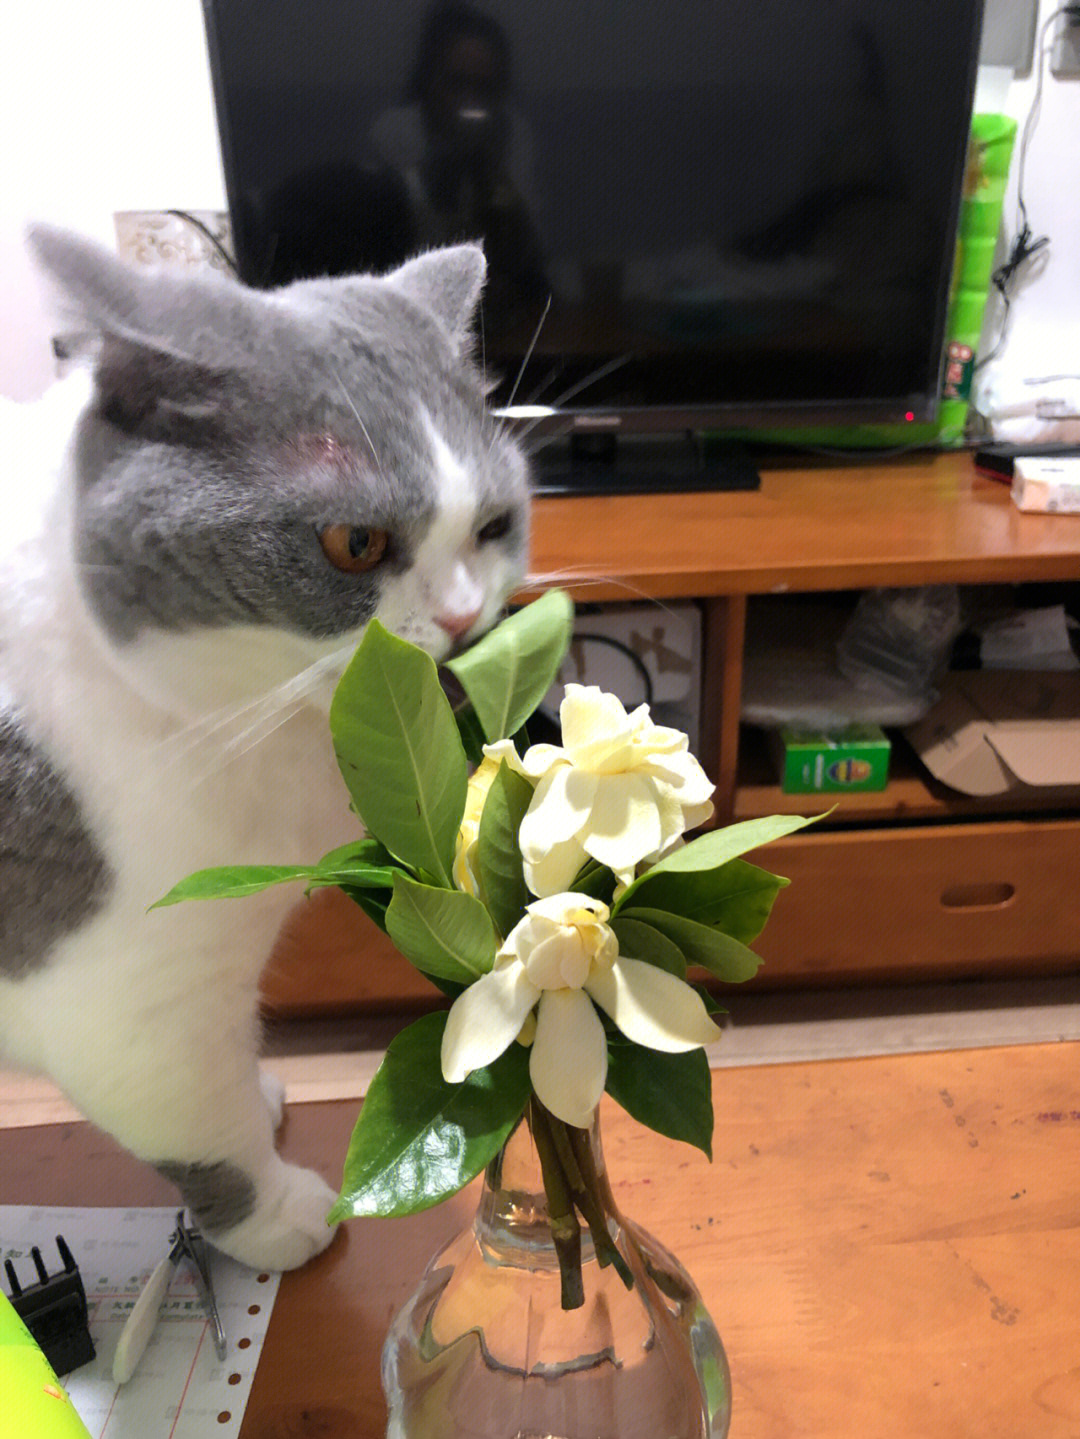 栀子花对猫有毒吗?我的猫在咬叶子了